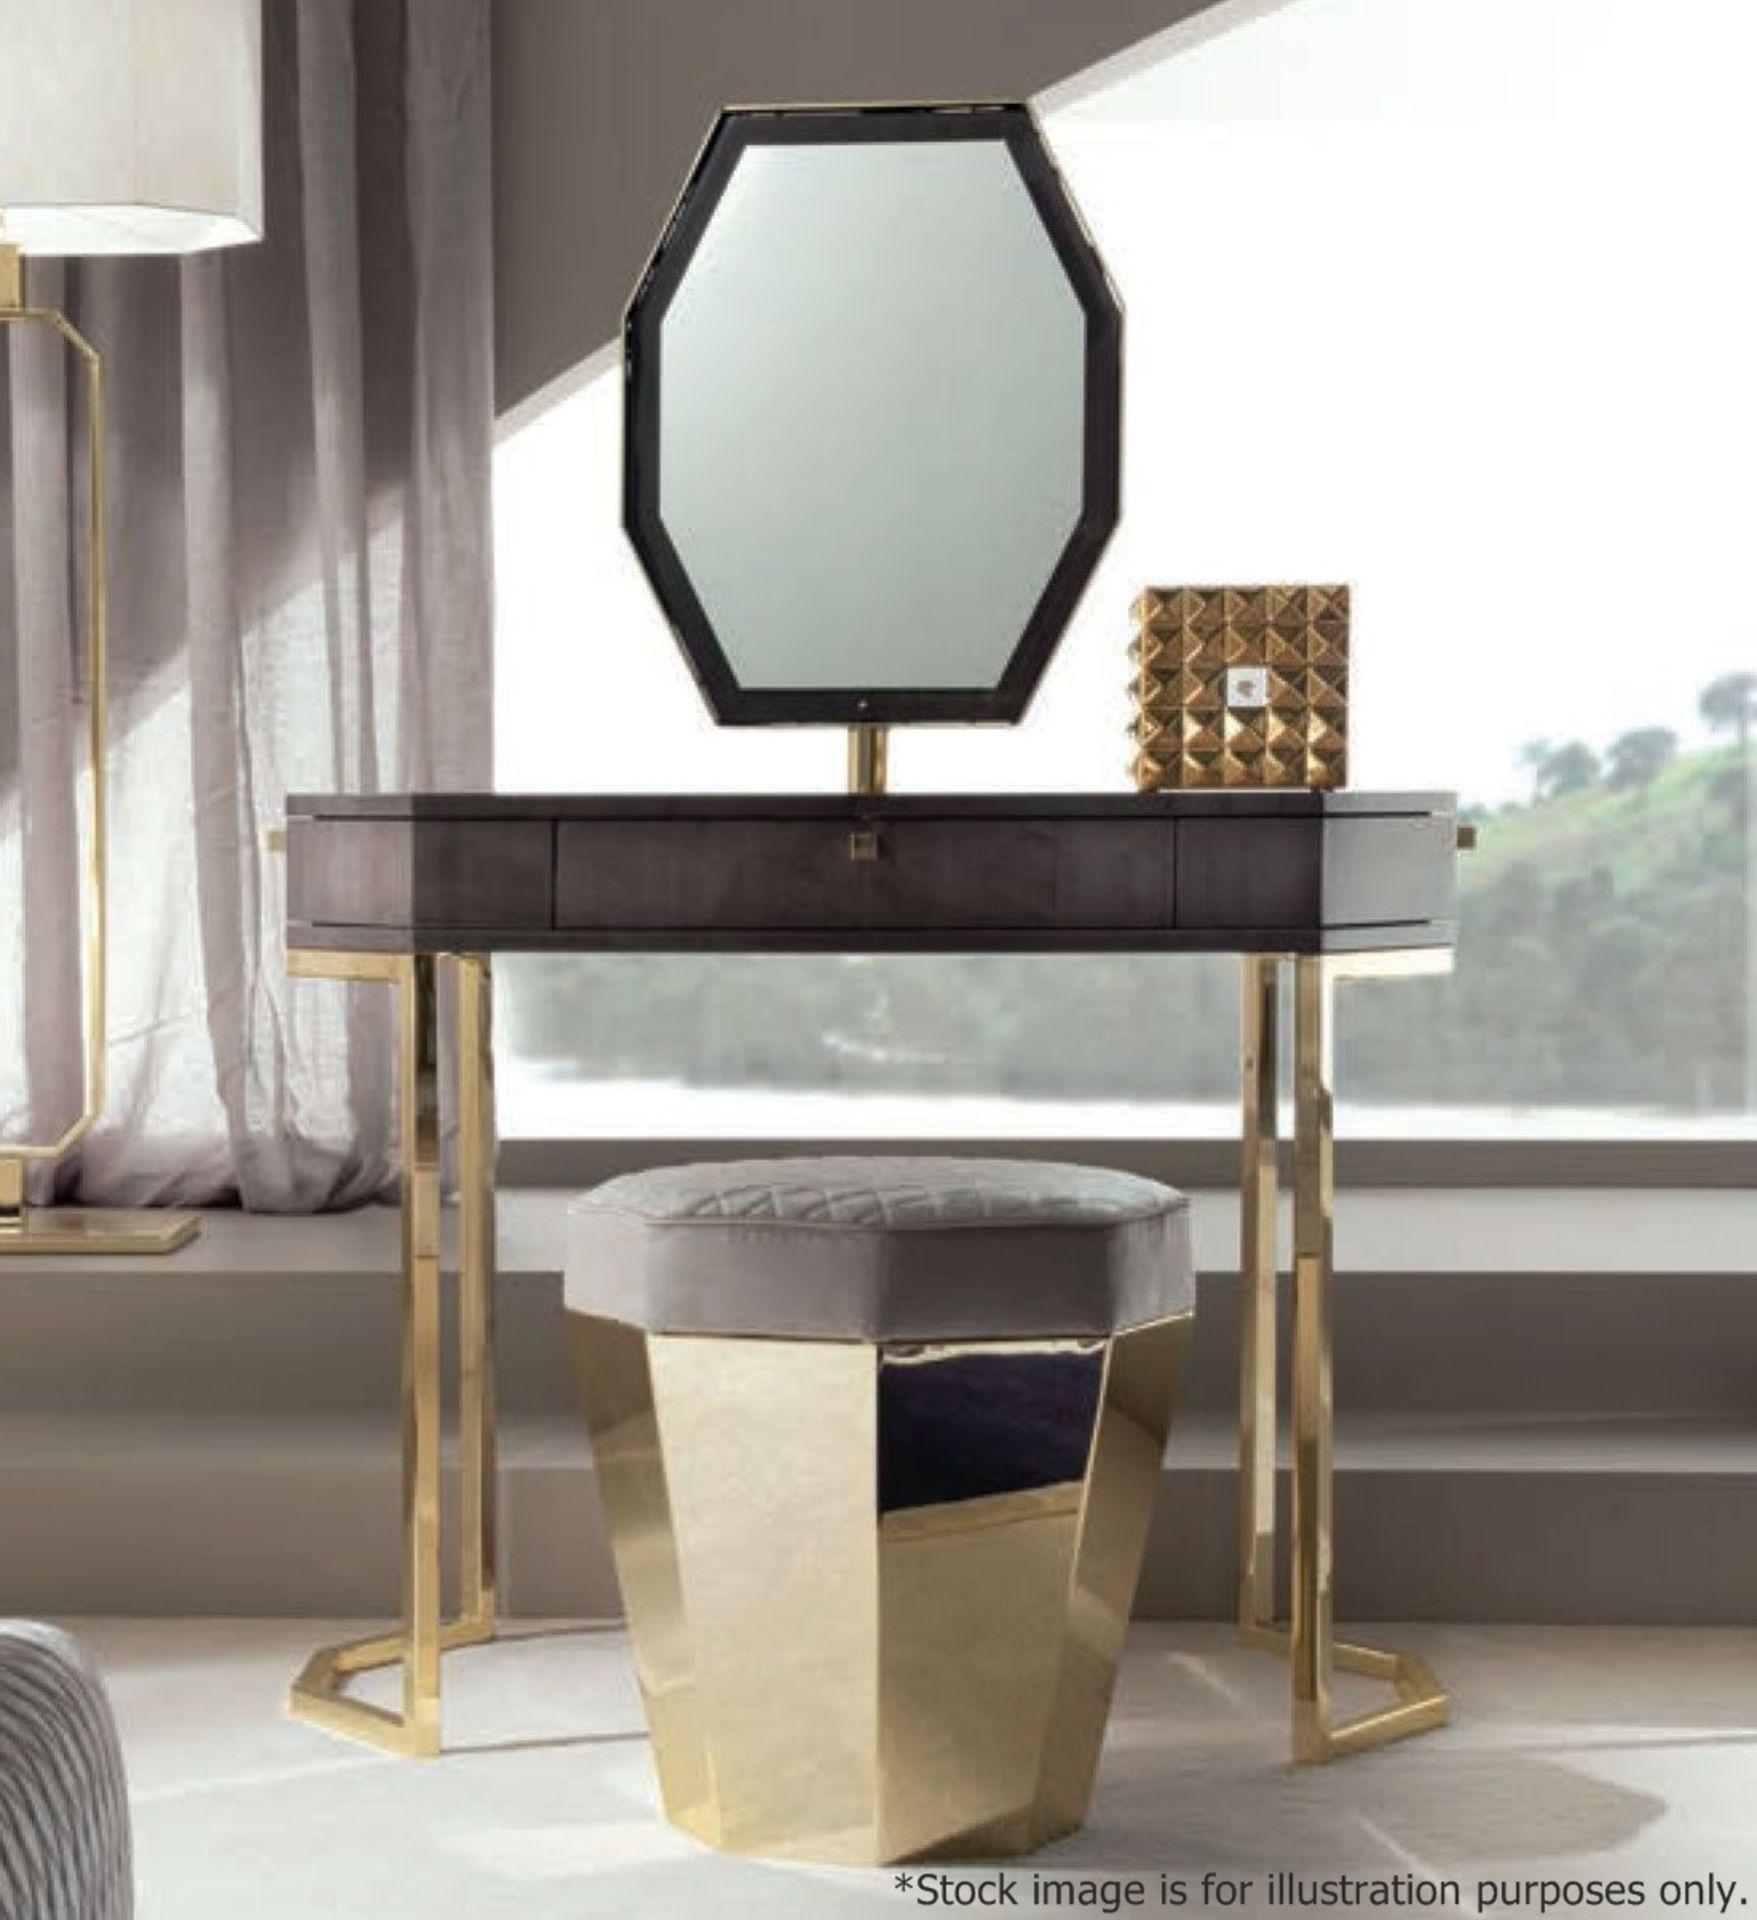 1 x GIORGIO COLLECTION 'Infinity' Luxury Italian Vanity Desk (5985) - Original RRP £5,040